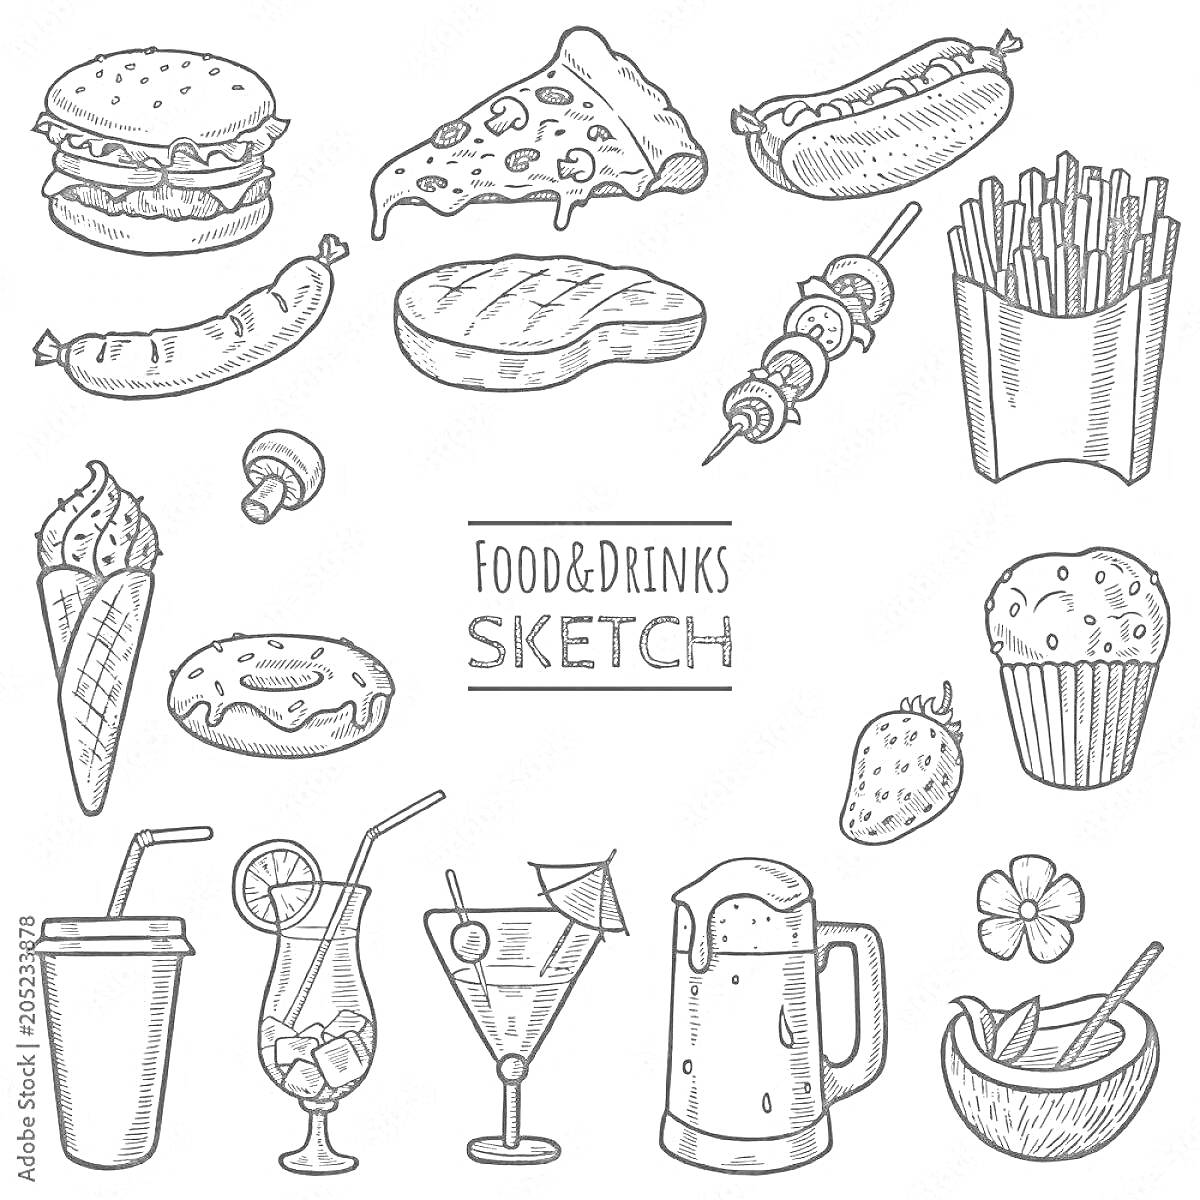 Раскраска гамбургер, пицца, хот-дог, картофель фри, колбаса, стейк, шашлык, мороженое, пончик, клубника, кекс, молочный коктейль, коктейль, коктейль в бокале, пивная кружка, стакан, цветок, миска с ложкой